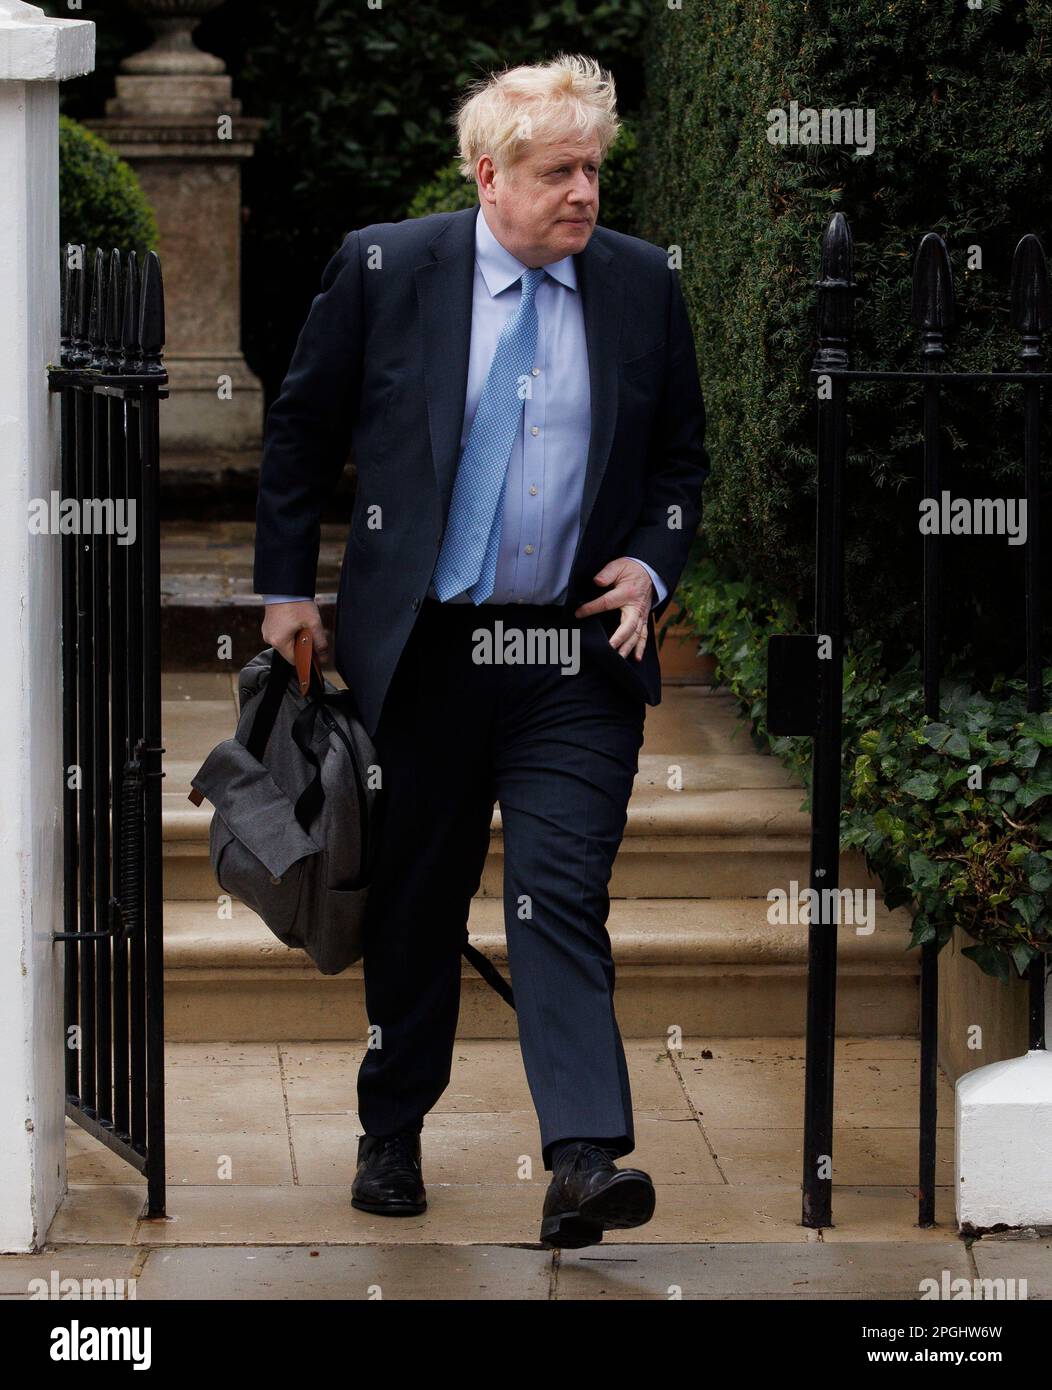 L'ancien premier ministre, Boris Johnson, quitte son domicile pour assister à une audience de comité à la Maison Portcullis pour être interrogé au sujet des partis au numéro 10. Banque D'Images